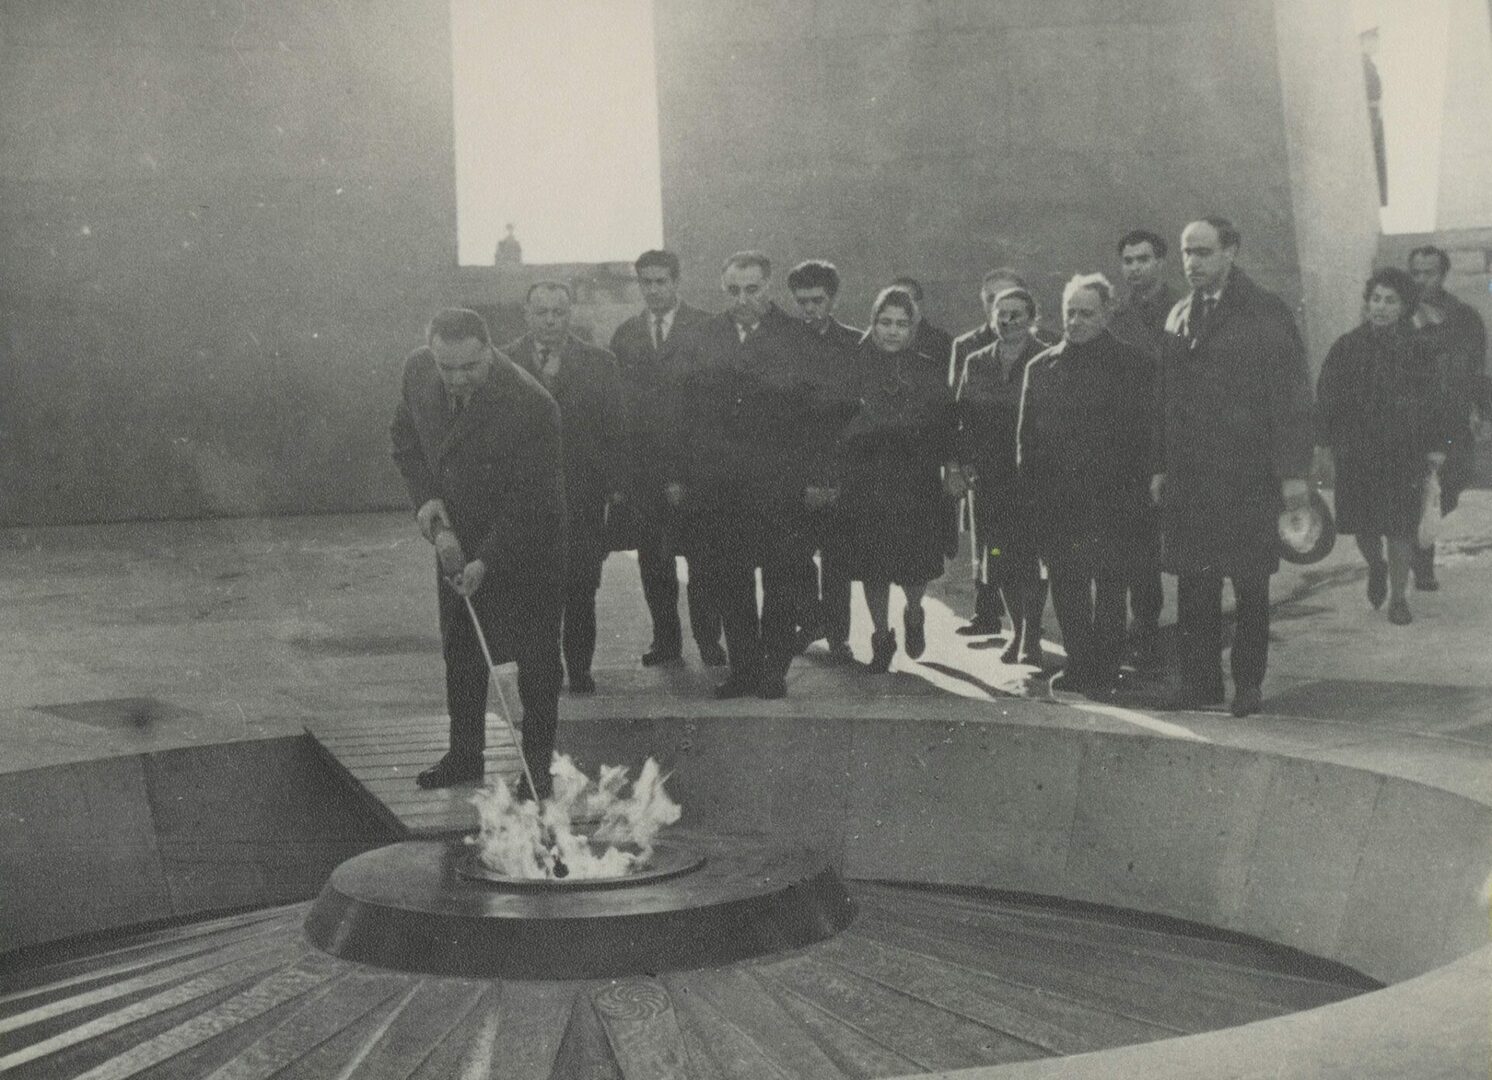 56 yıl önce bugün, Ermeni Soykırımı kurbanlarına adanmış anıt açıldı (FOTO)